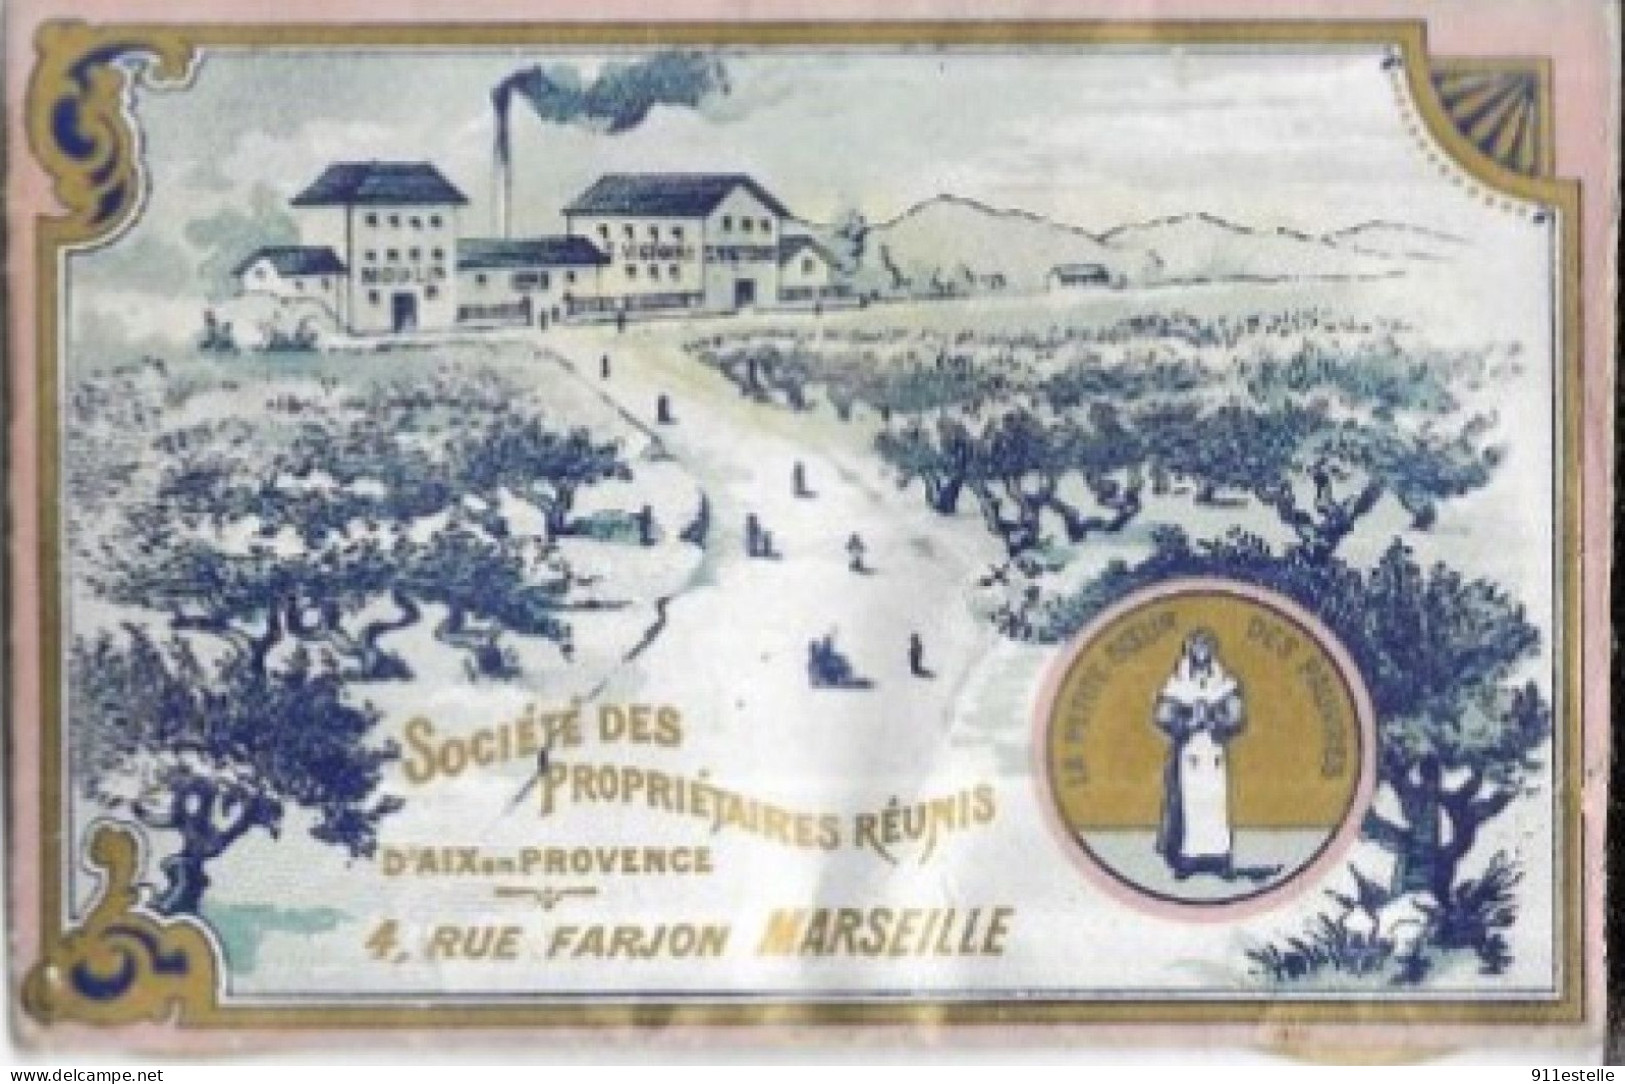 13 MARSEILLE . SOCIETE DES PROPRIETAIRES REUNIS 4. RUE FARJON ( Carte PUB Violette  ) - Estación, Belle De Mai, Plombières